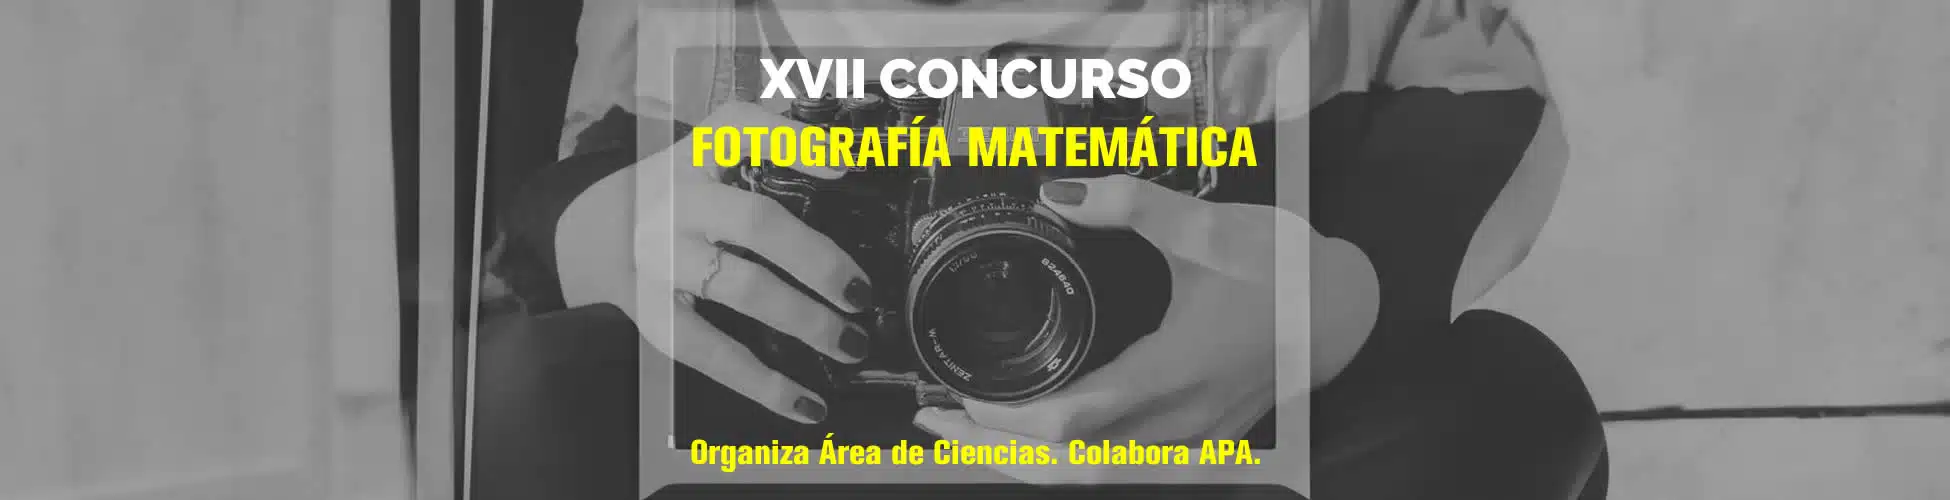 XVII Concurso de Fotografía Matemática